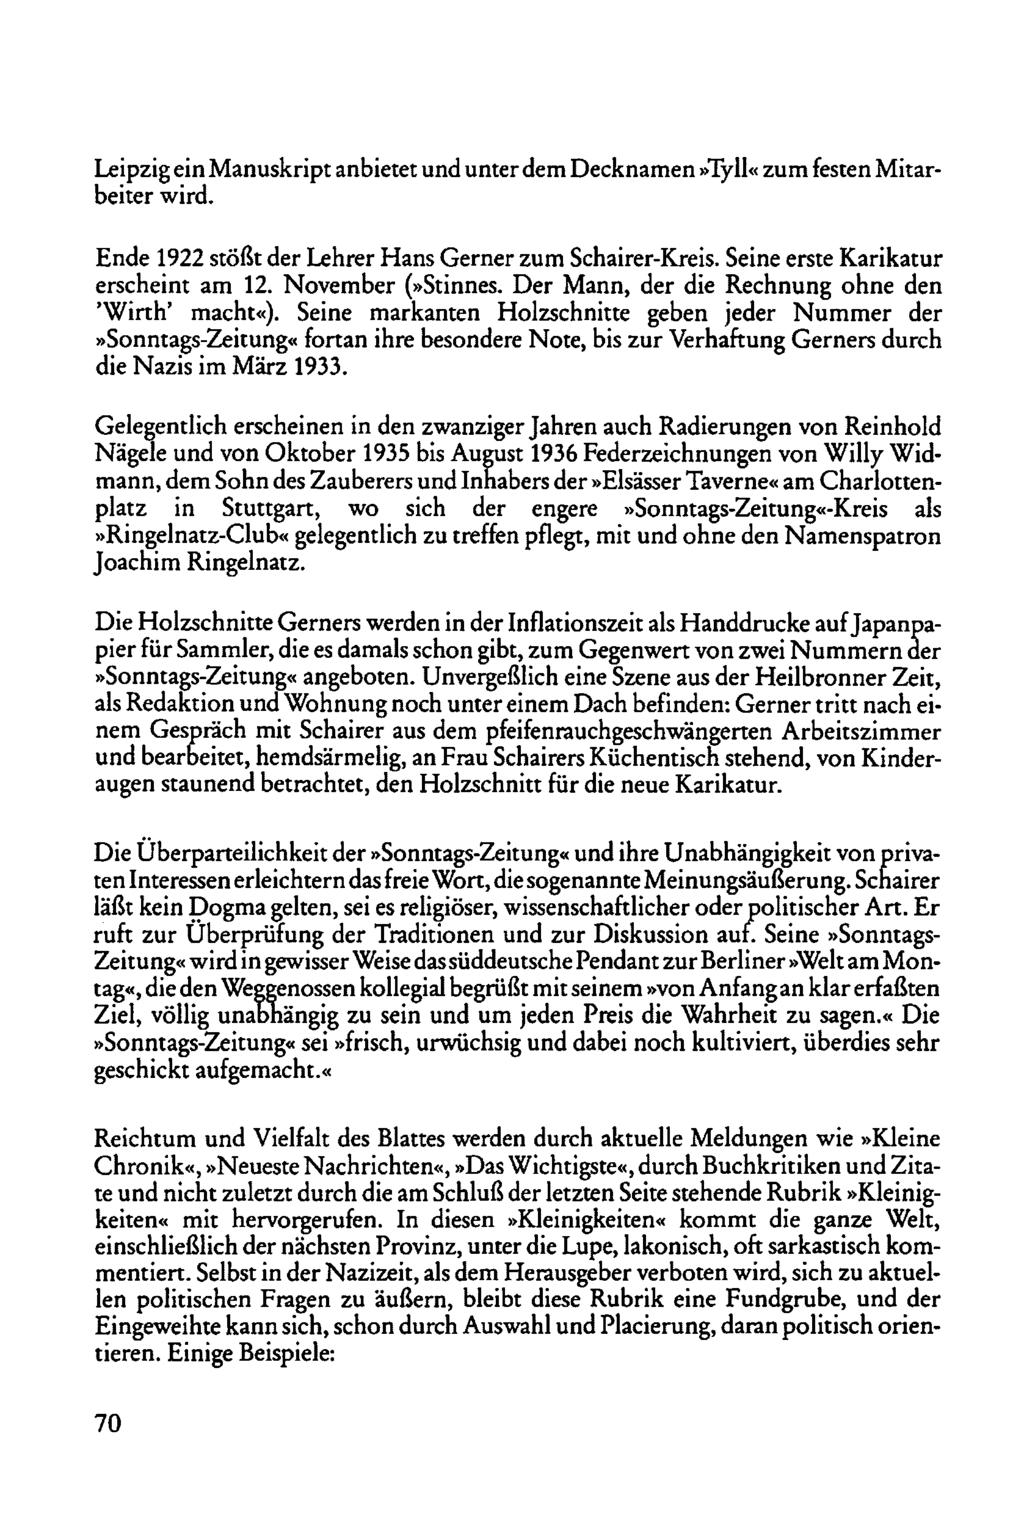 Leipzig ein Manuskript anbietet und unterdem Decknamen»Tyll«zum festen Mitarbeiter wird. Ende 1922 stößt der Lehrer Hans Gerner zum Schairer-Kreis. Seine erste Karikatur erscheint am 12.